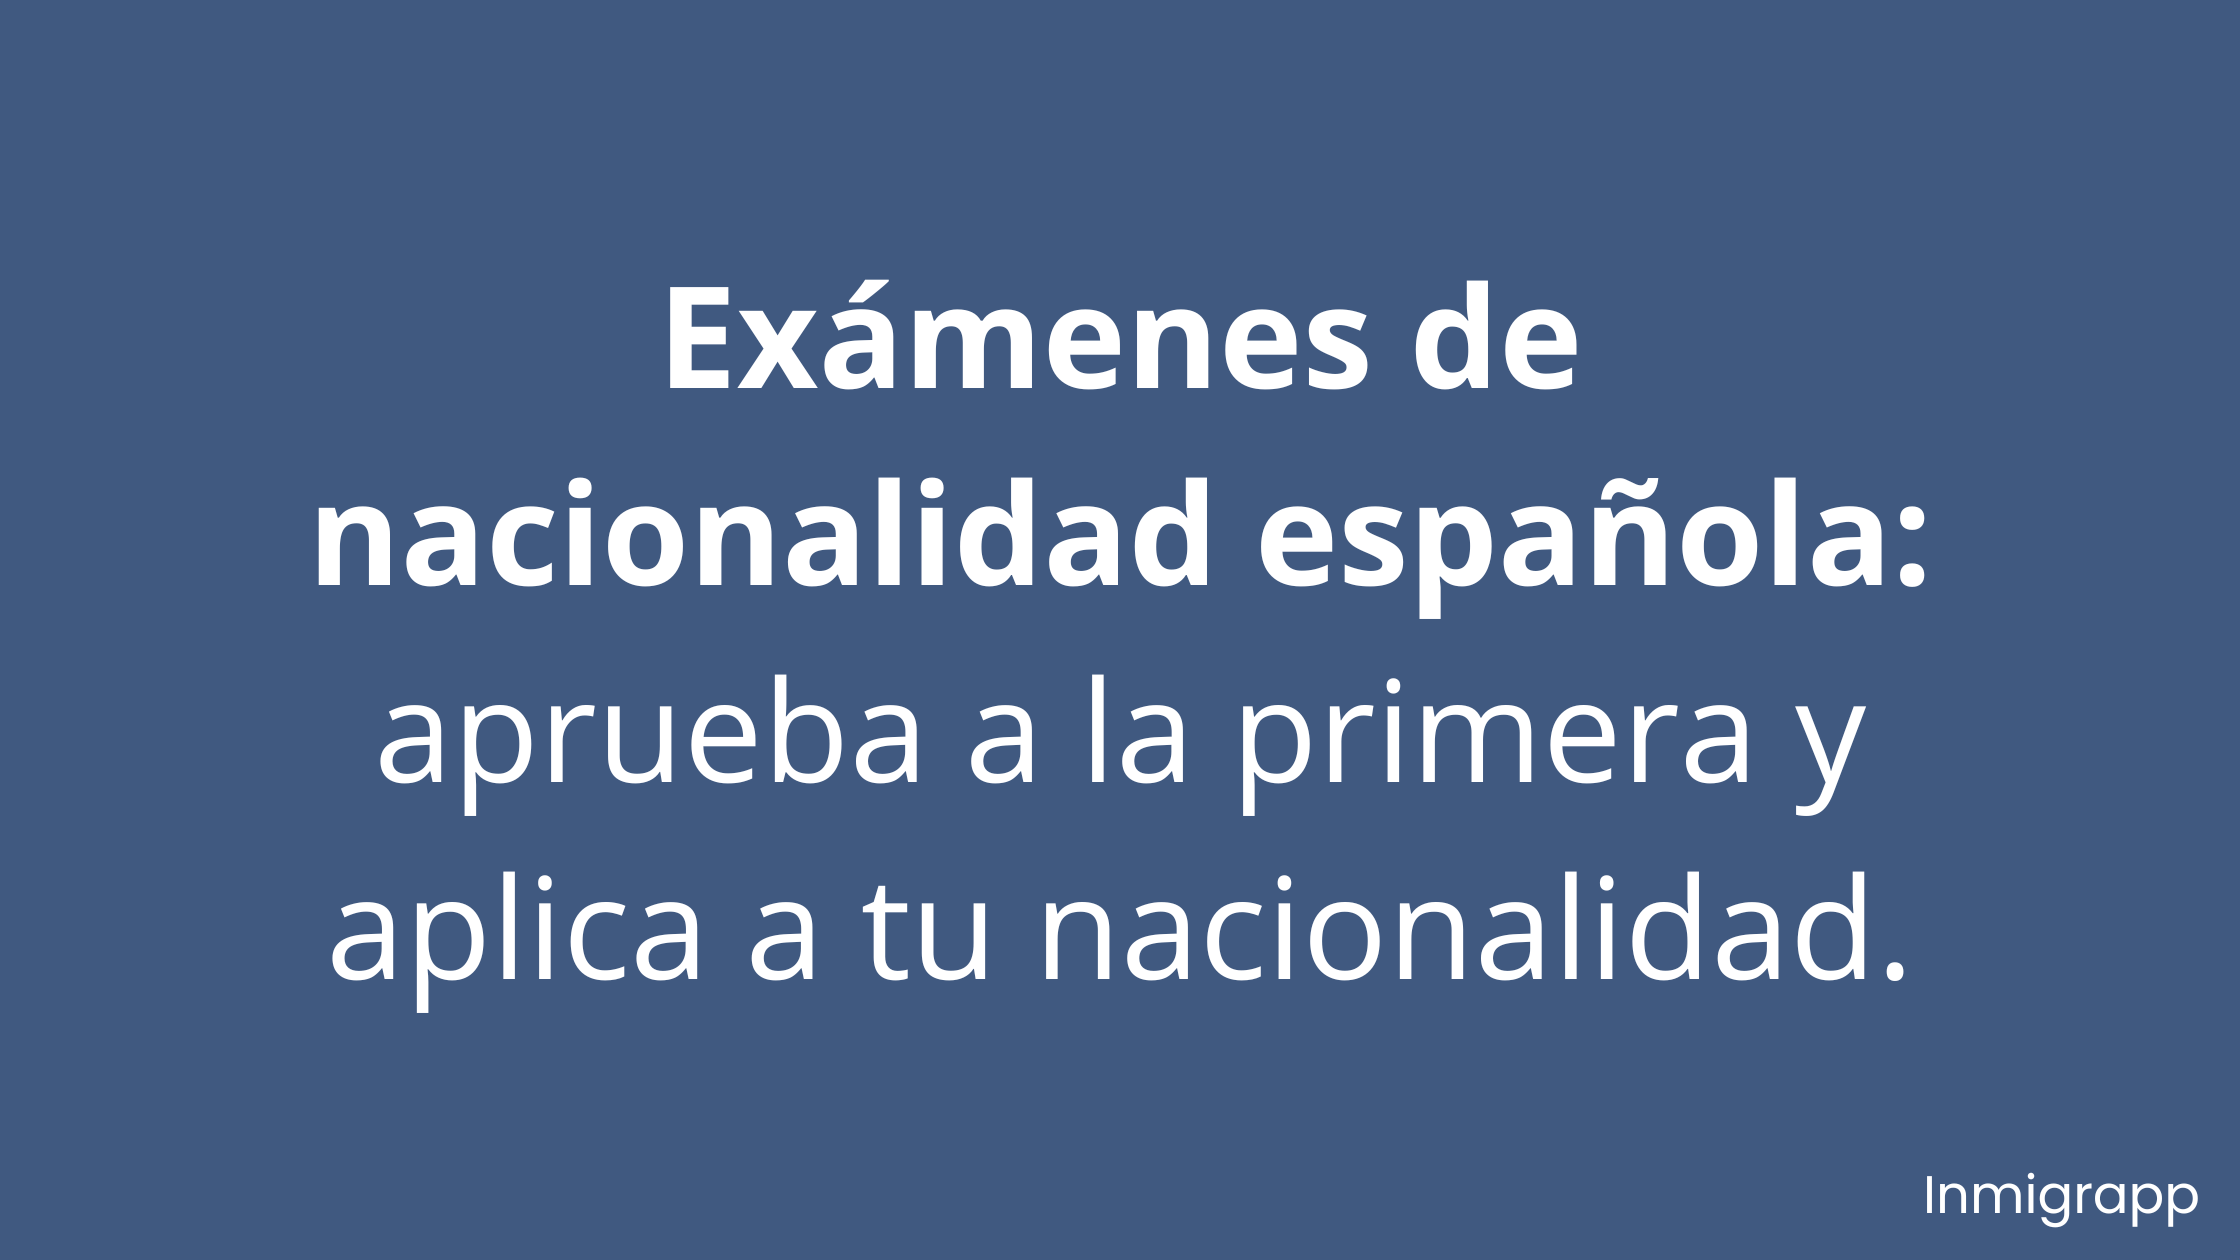 Exámenes de nacionalidad española: aprueba a la primera y aplica a tu nacionalidad